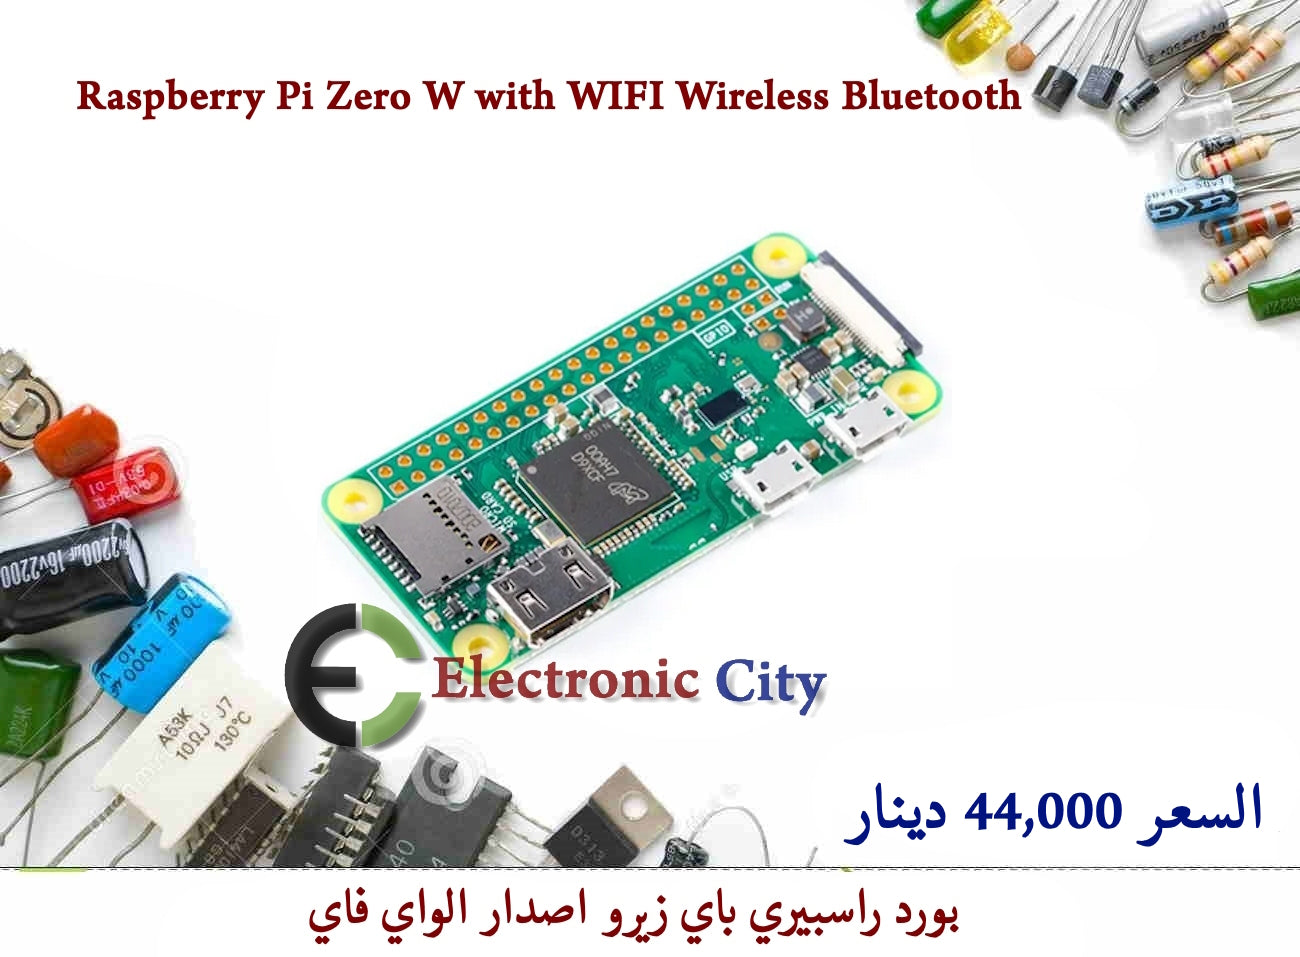 Raspberry Pi Zero W with WIFI Wireless Bluetooth 012476